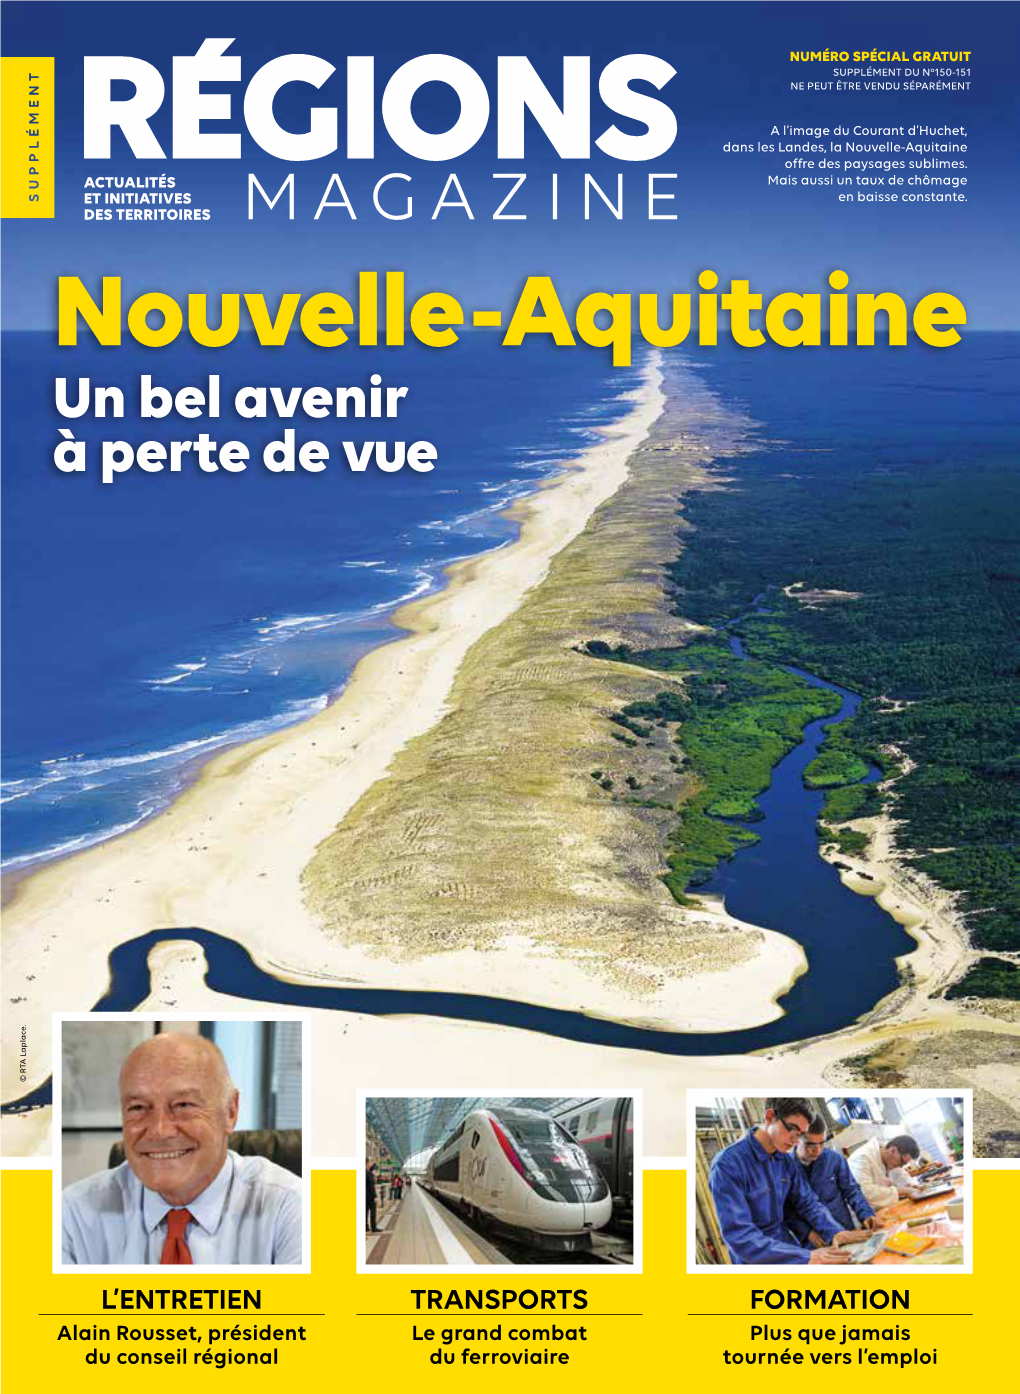 Nouvelle-Aquitaine Offre Des Paysages Sublimes